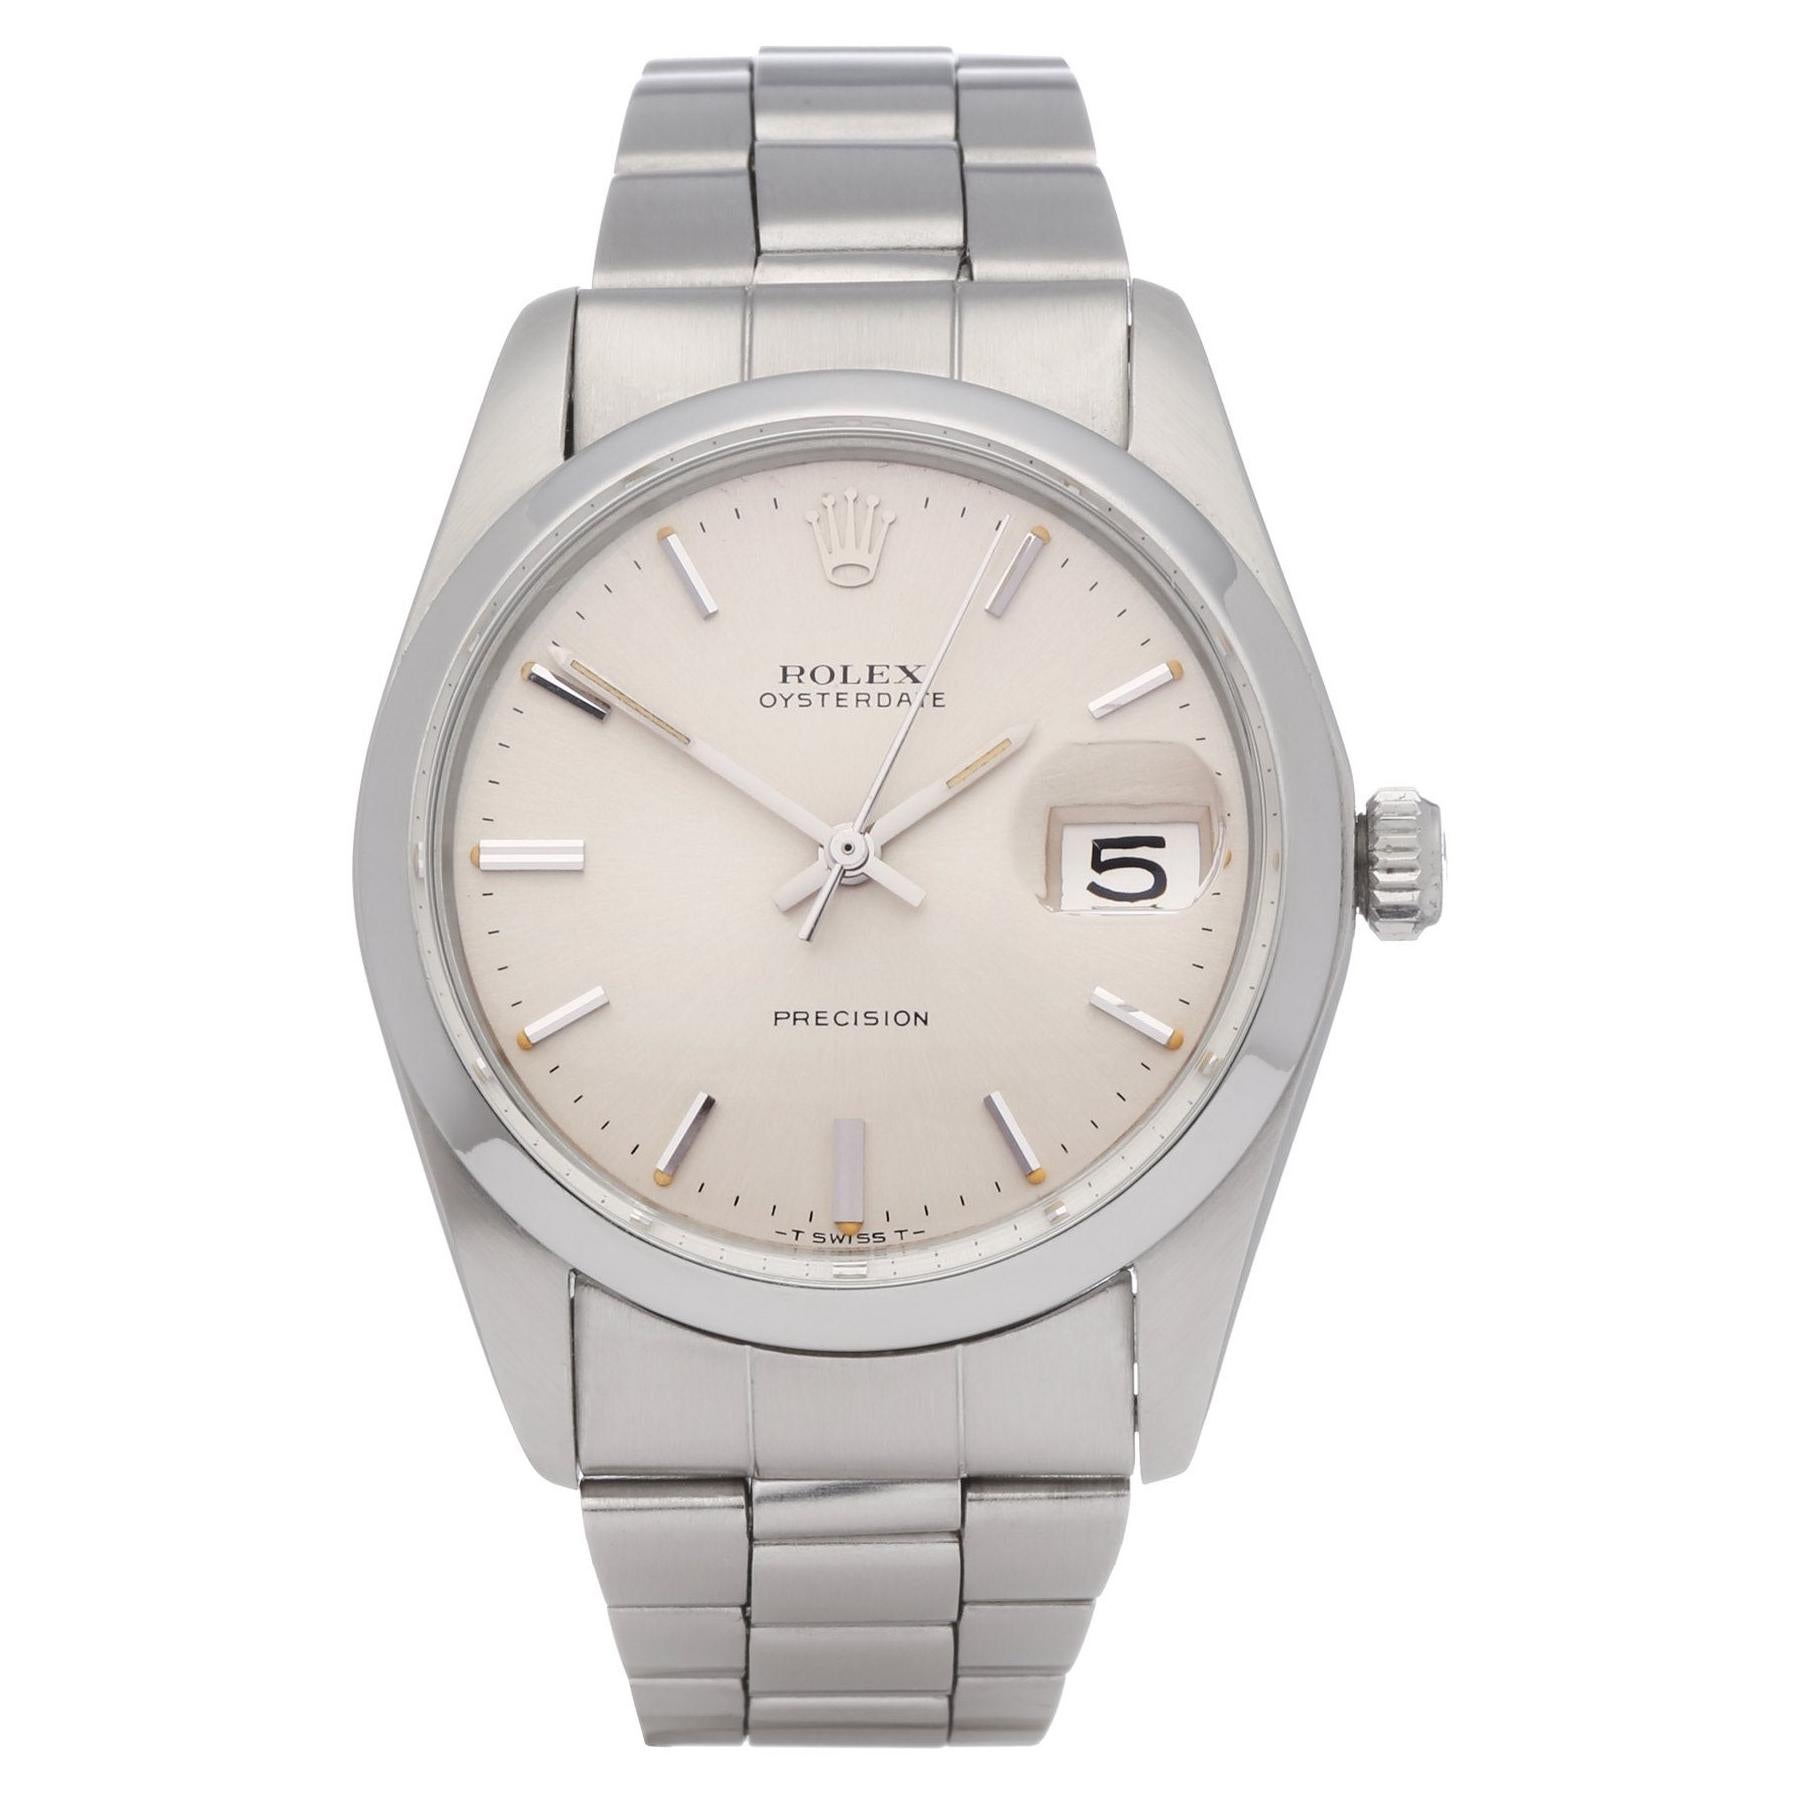 Rolex Oysterdate 6694 Unisex Stainless Steel Watch